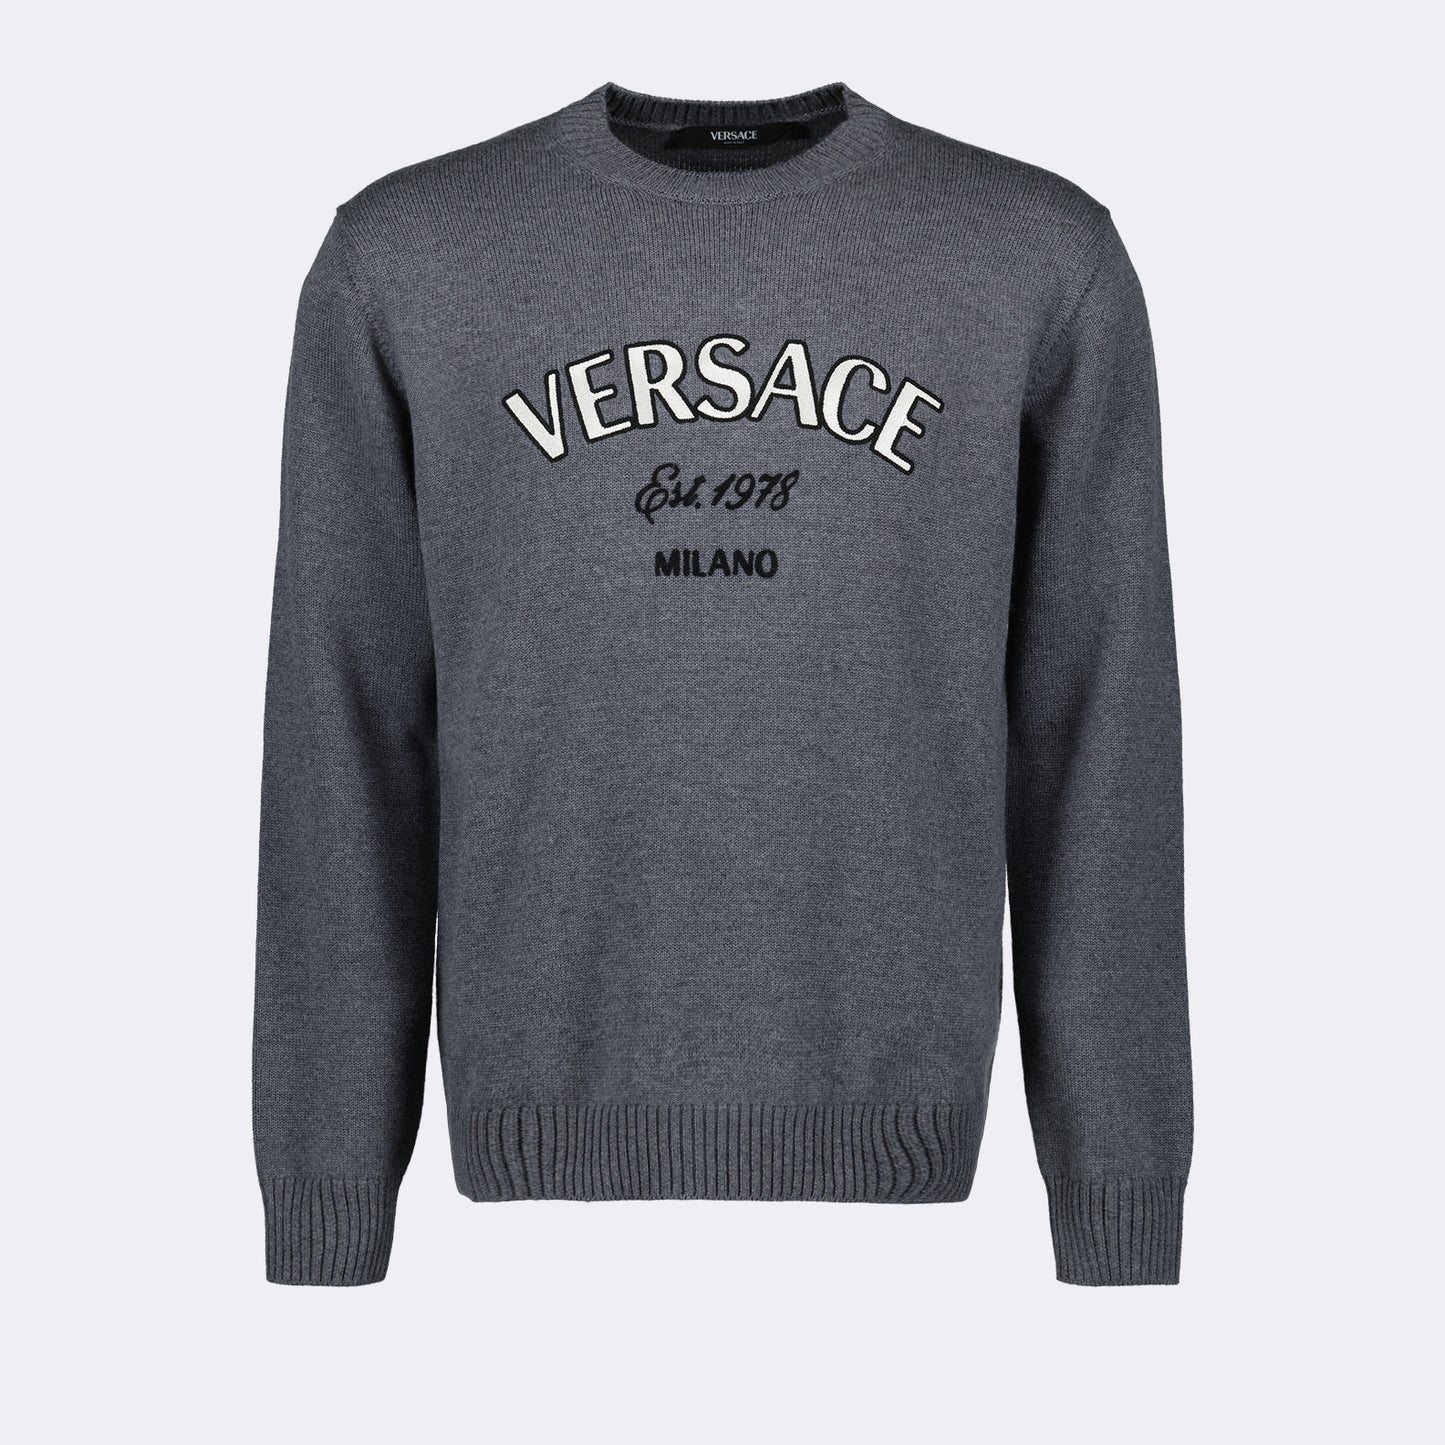 Versace Milano sweater